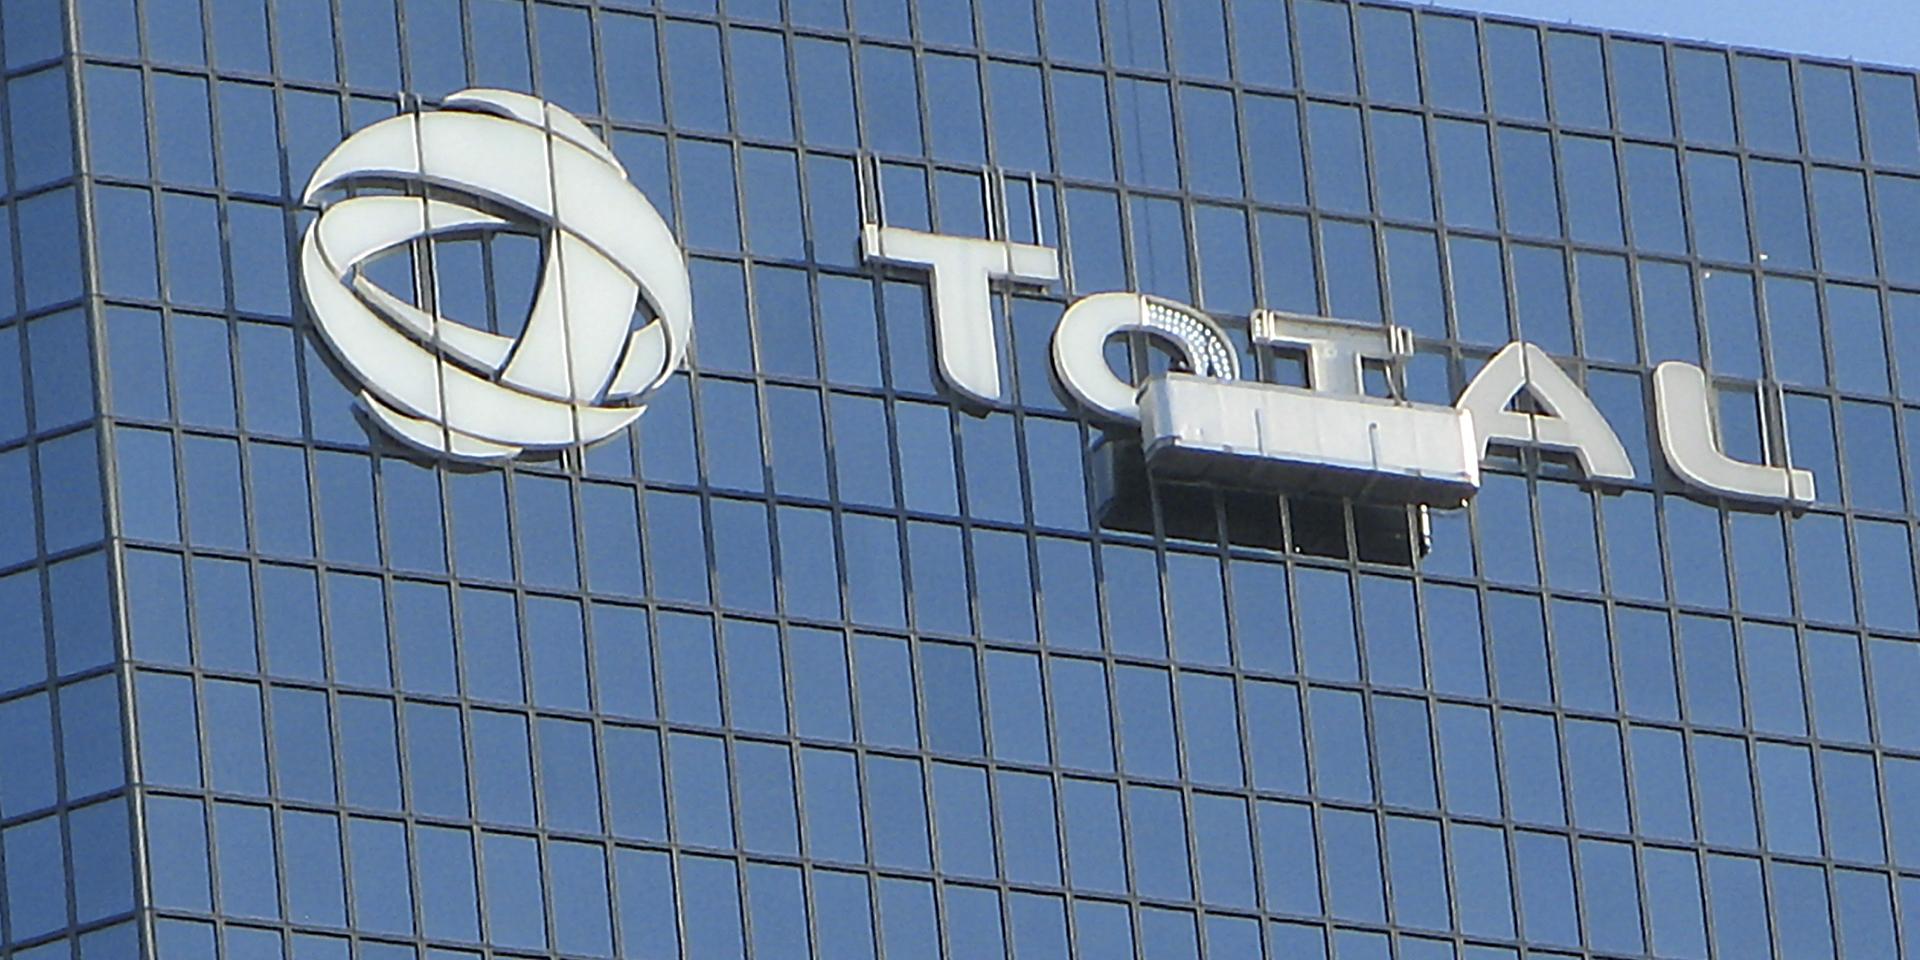 Installation du logo Total sur la Tour de La Défense par Visotec